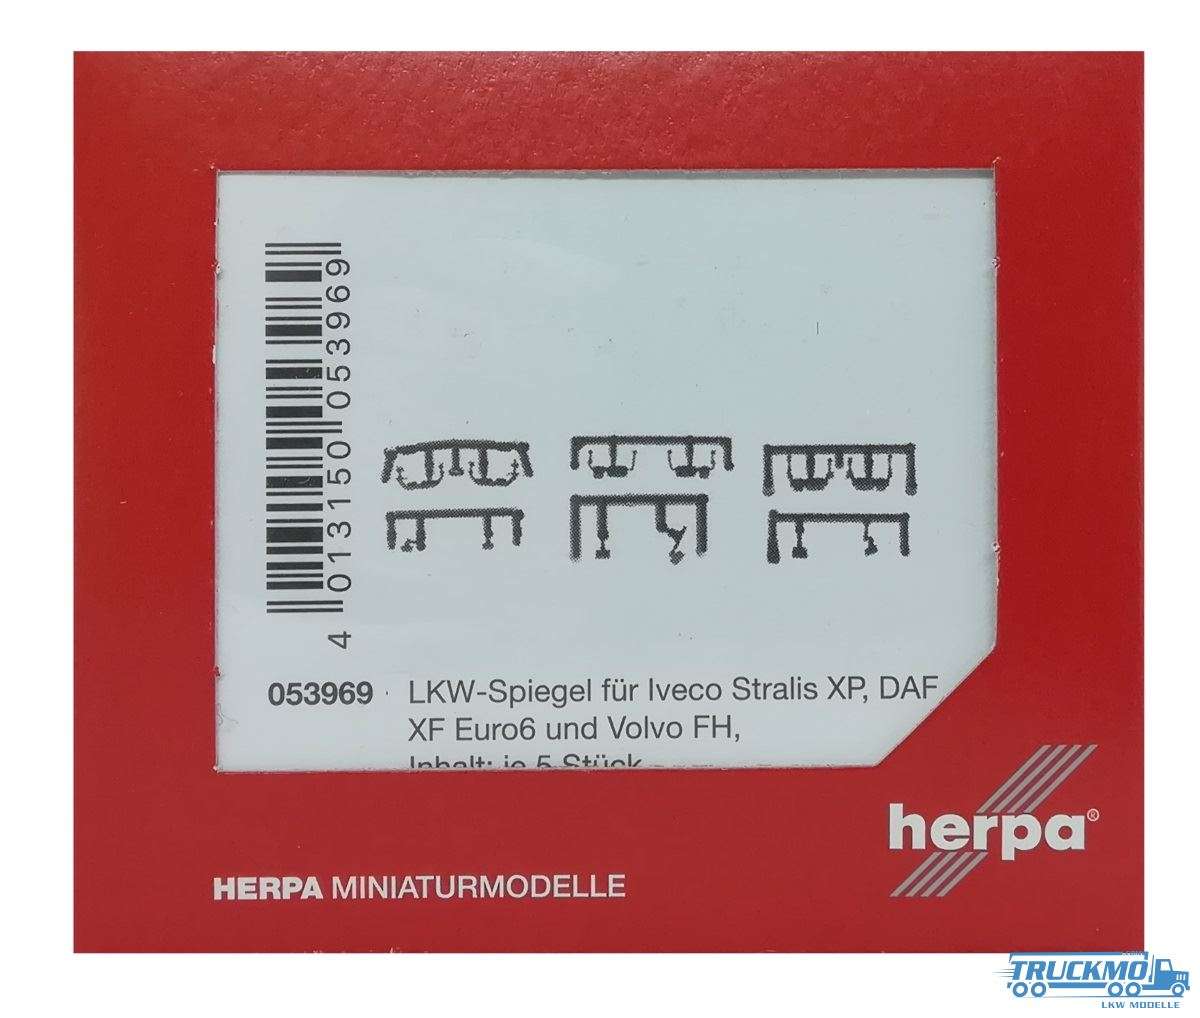 Herpa LKW-Spiegel für Iveco Stralis XP, DAF XF und Volvo FH je 5 Satz 053969